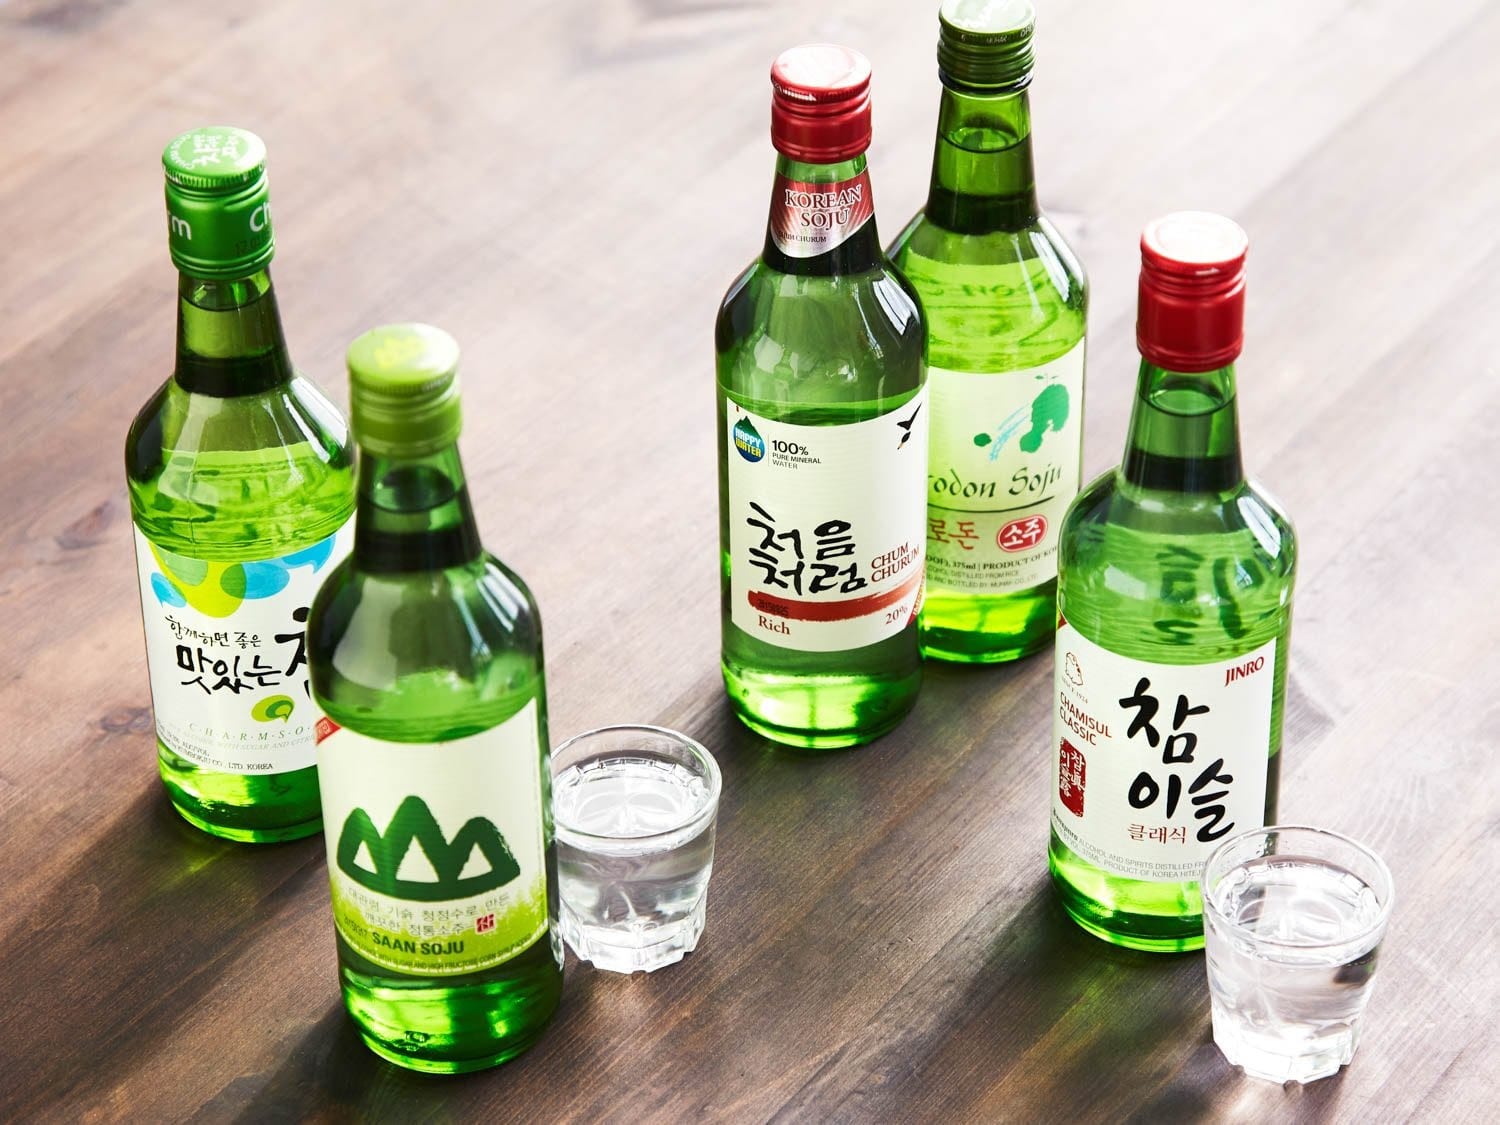 soju korea, rượu soju hàn quốc, soju trái cây, soju hàn quốc, rượu soju hàn quốc giá bao nhiêu, soju pha, các loại rượu soju hàn quốc, soju cam, rượu soju hàn quốc bao nhiêu độ, mua rượu soju hàn quốc, nơi bán rượu soju hàn quốc, rượu soju hàn quốc vinmart, soju các vị, giá bán rượu soju hàn quốc, soju sor, cách uống rượu soju hàn quốc, rượu soju 45 độ, rượu soju, soju, rượu hàn quốc, ruou han quoc, rượu soju 40 độ